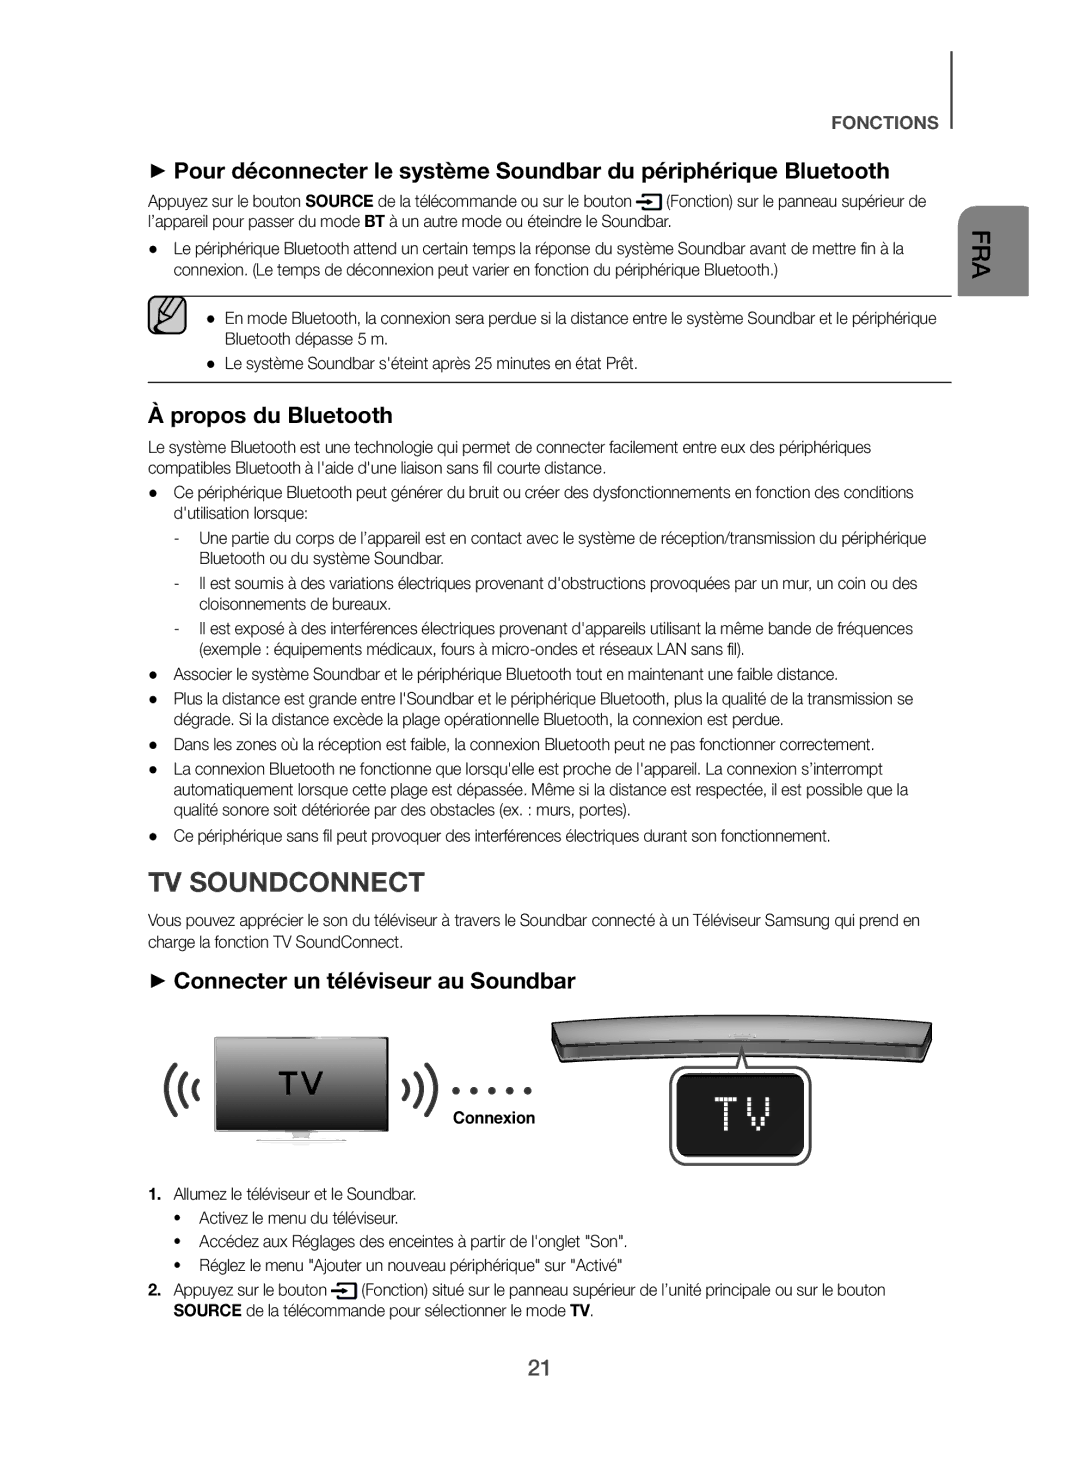 Samsung HW-H7500/ZF, HW-H7501/ZF TV Soundconnect, Propos du Bluetooth, + Connecter un téléviseur au Soundbar, Connexion 